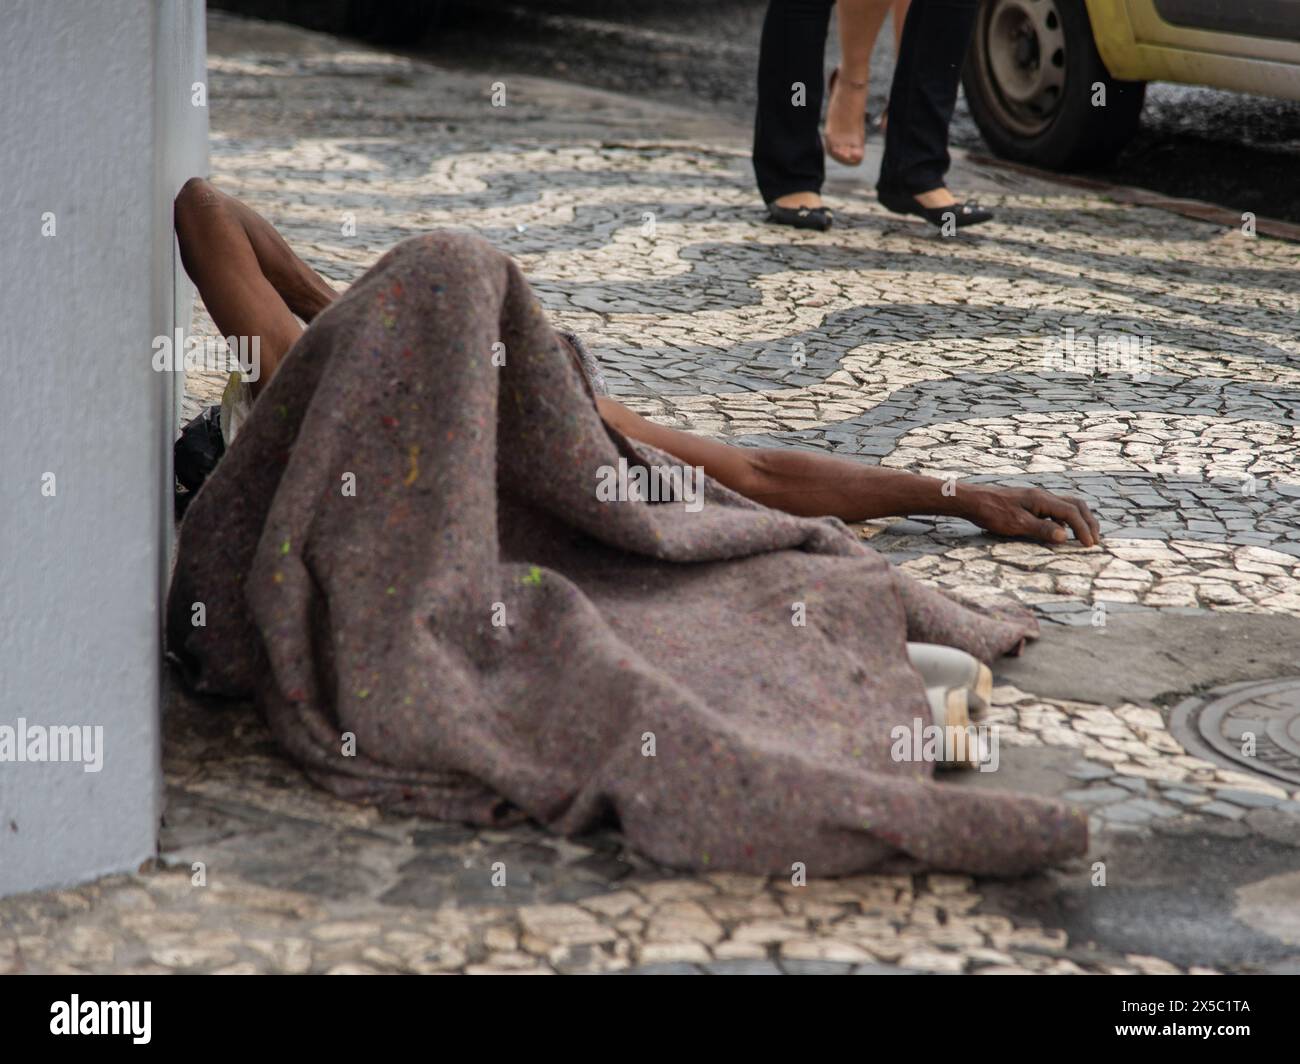 Salvador, Bahia, Brasilien - 12. Mai 2019: Obdachloser schläft tagsüber auf einer Straße im historischen Zentrum der Stadt Salvador, Bahia. Stockfoto